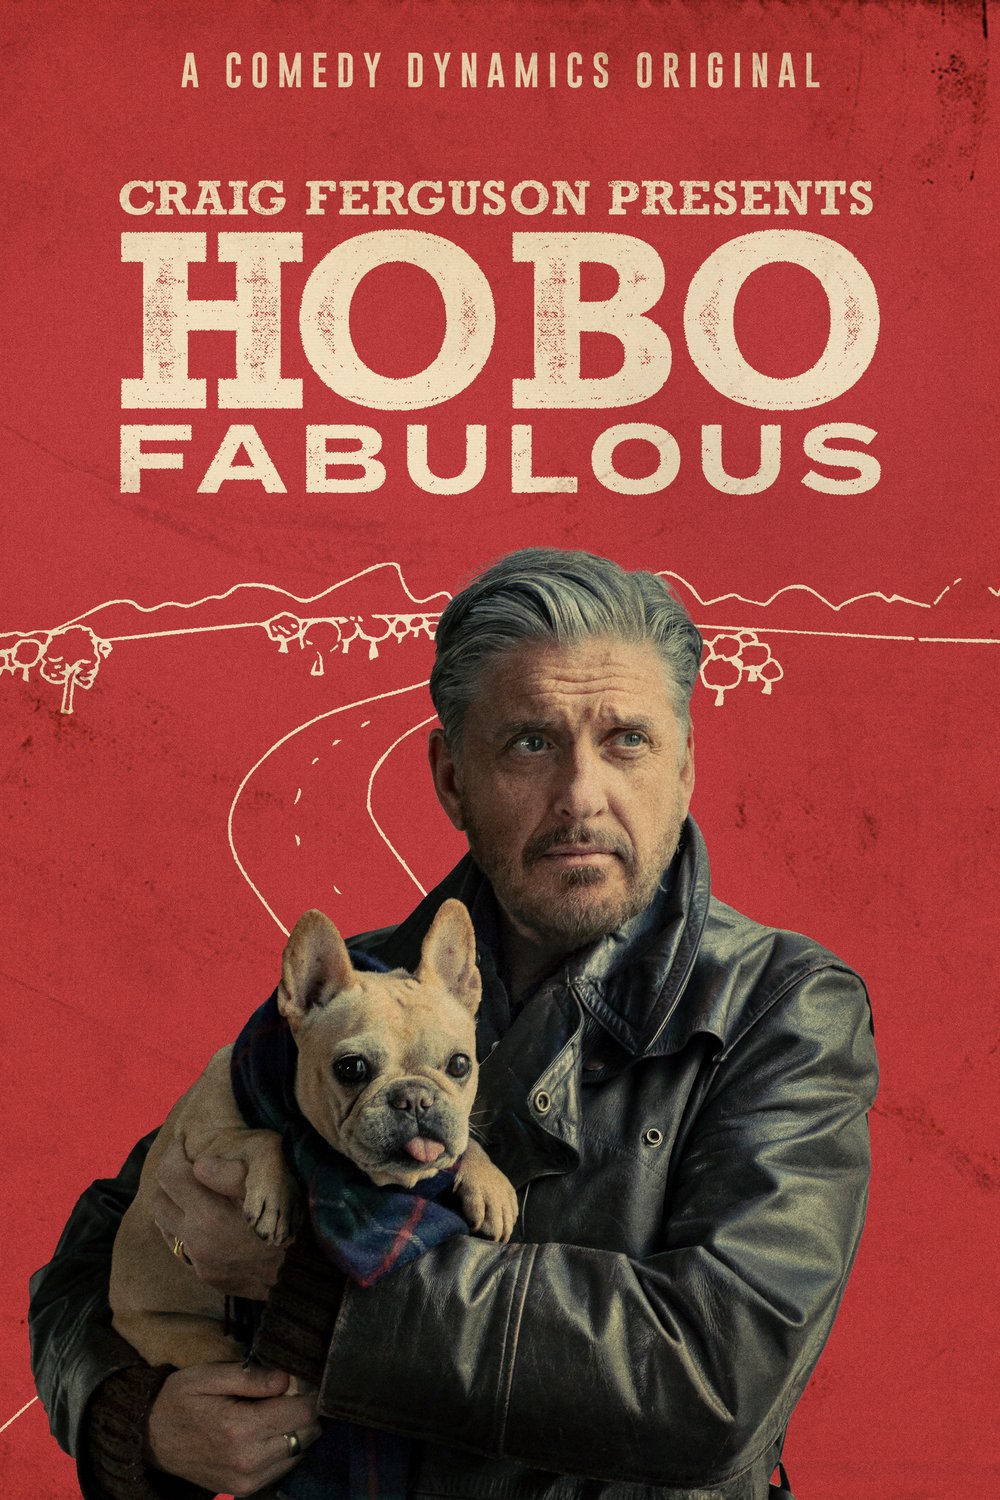 Poster of the movie Craig Ferguson's Hobo Fabulous